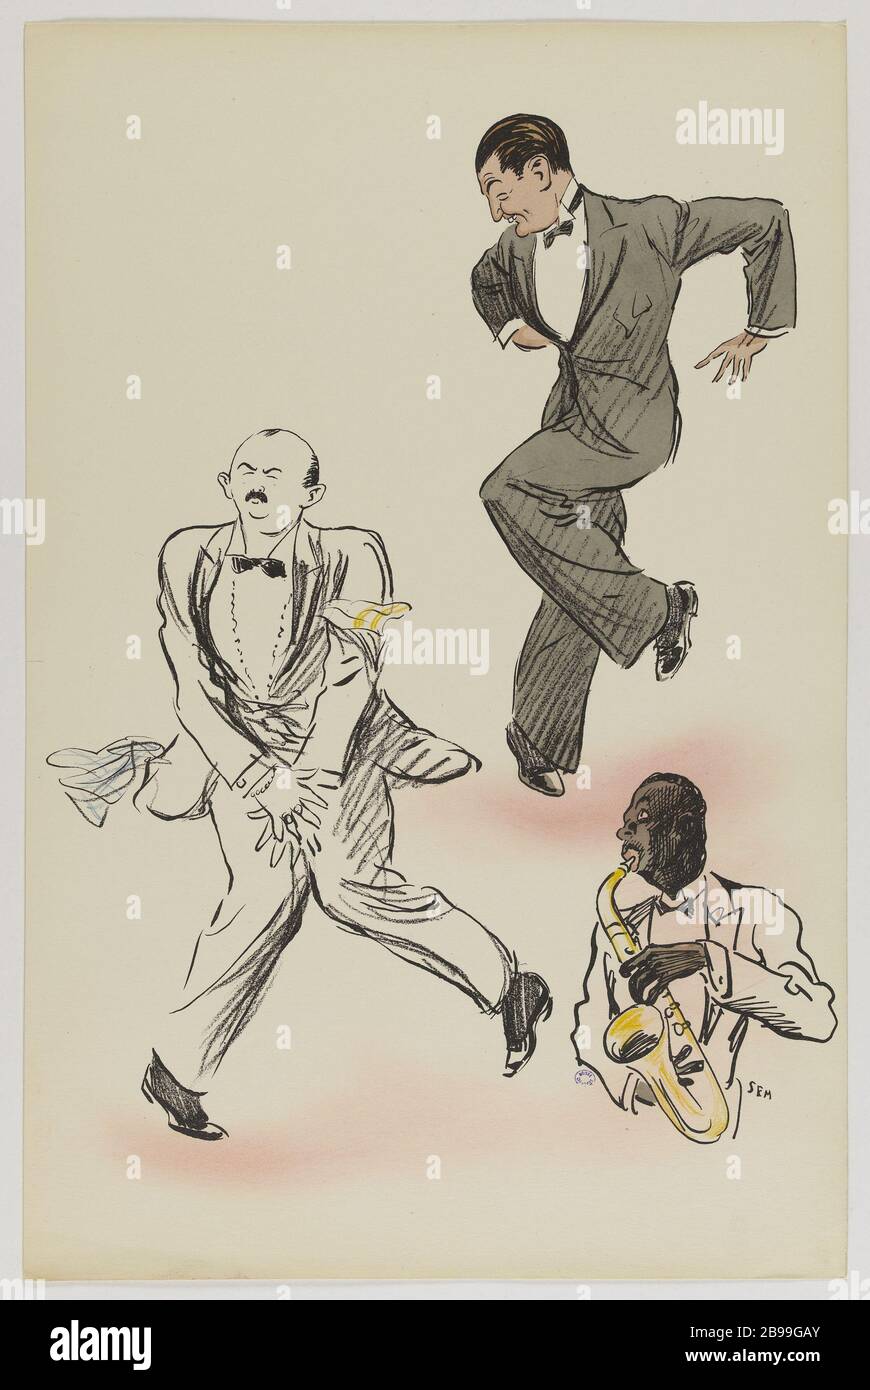 ALBUM WHITE BOTTOMS BY SEM (PL 38) Sem (1863-1934). "Album White Bottoms by Sem (pl 38)". Lithographie en couleur. Paris, musée Carnavalet. Stock Photo